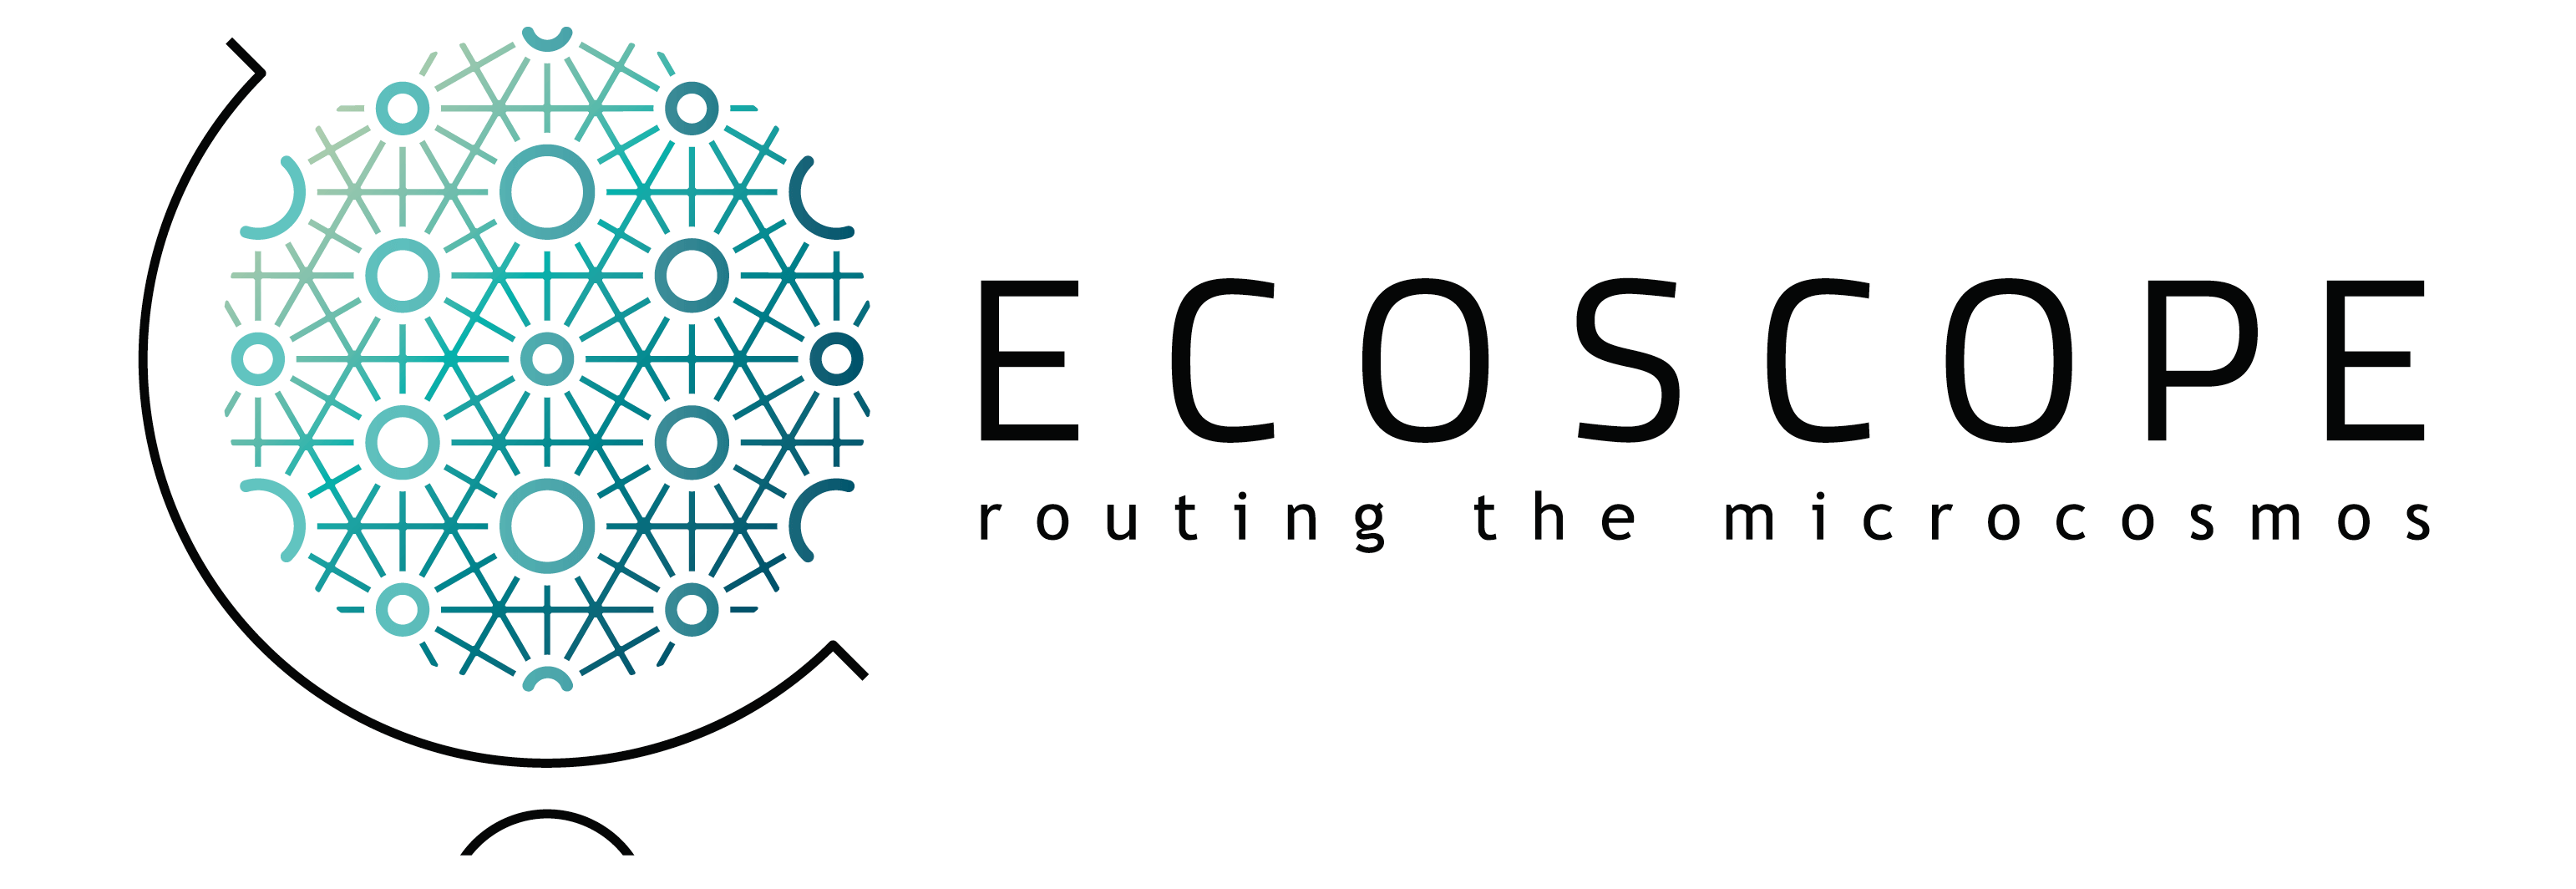 ECOSCOPE